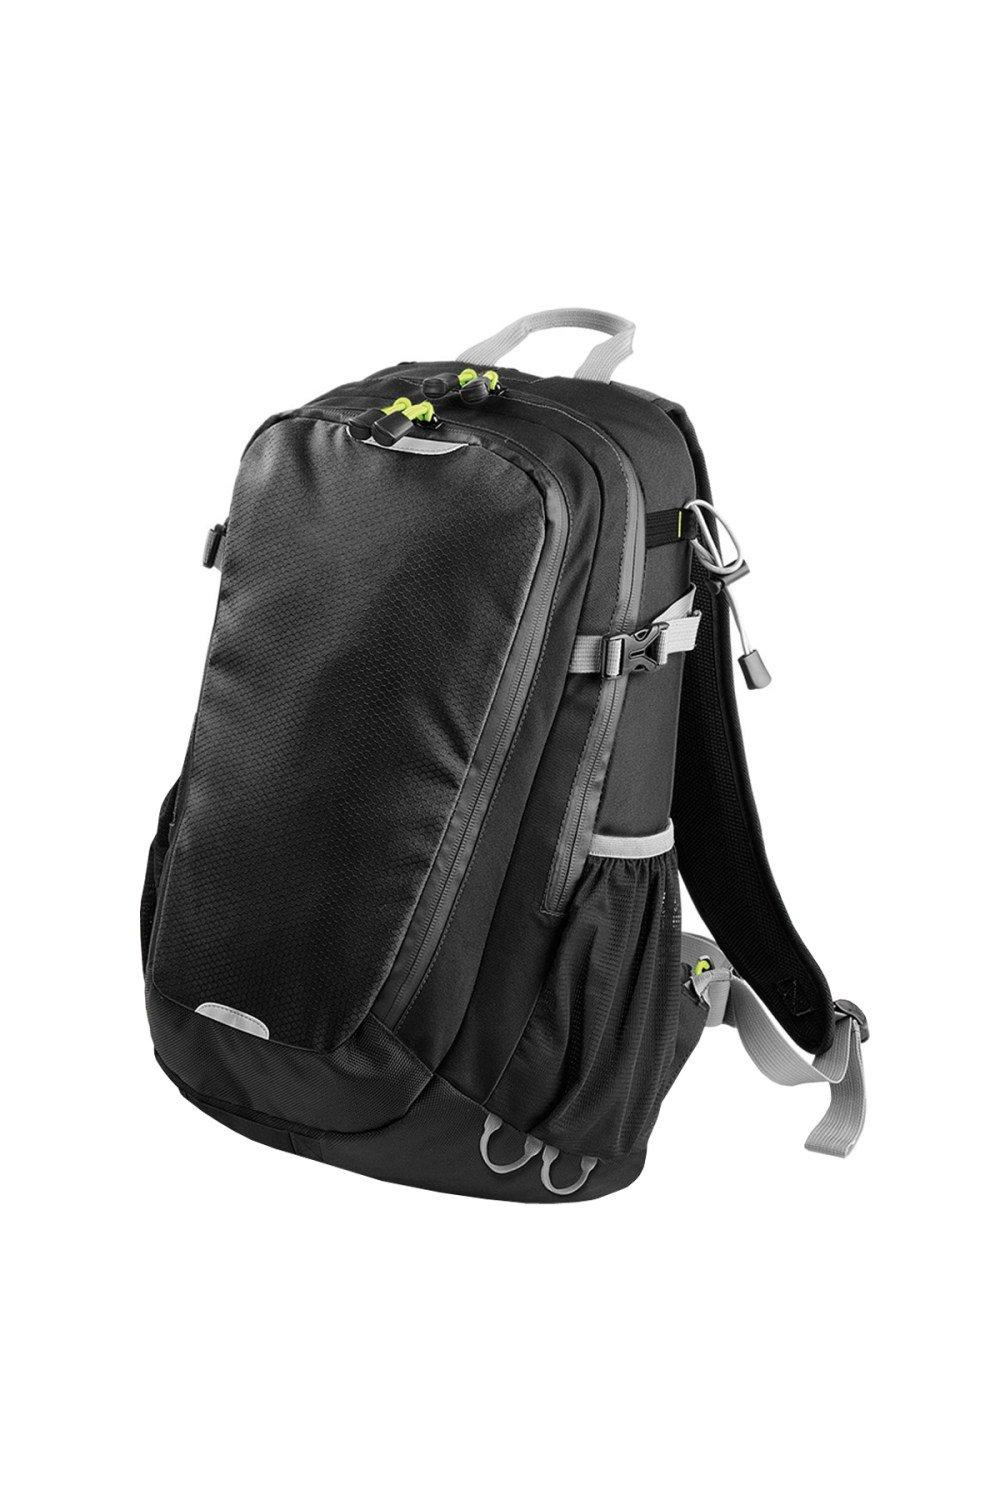 Рюкзак Apex Daypack объемом 20 литров (20 л, ноутбук с диагональю до 15,6 дюйма) Quadra, черный чехол mypads инду лиса для oukitel wp16 задняя панель накладка бампер